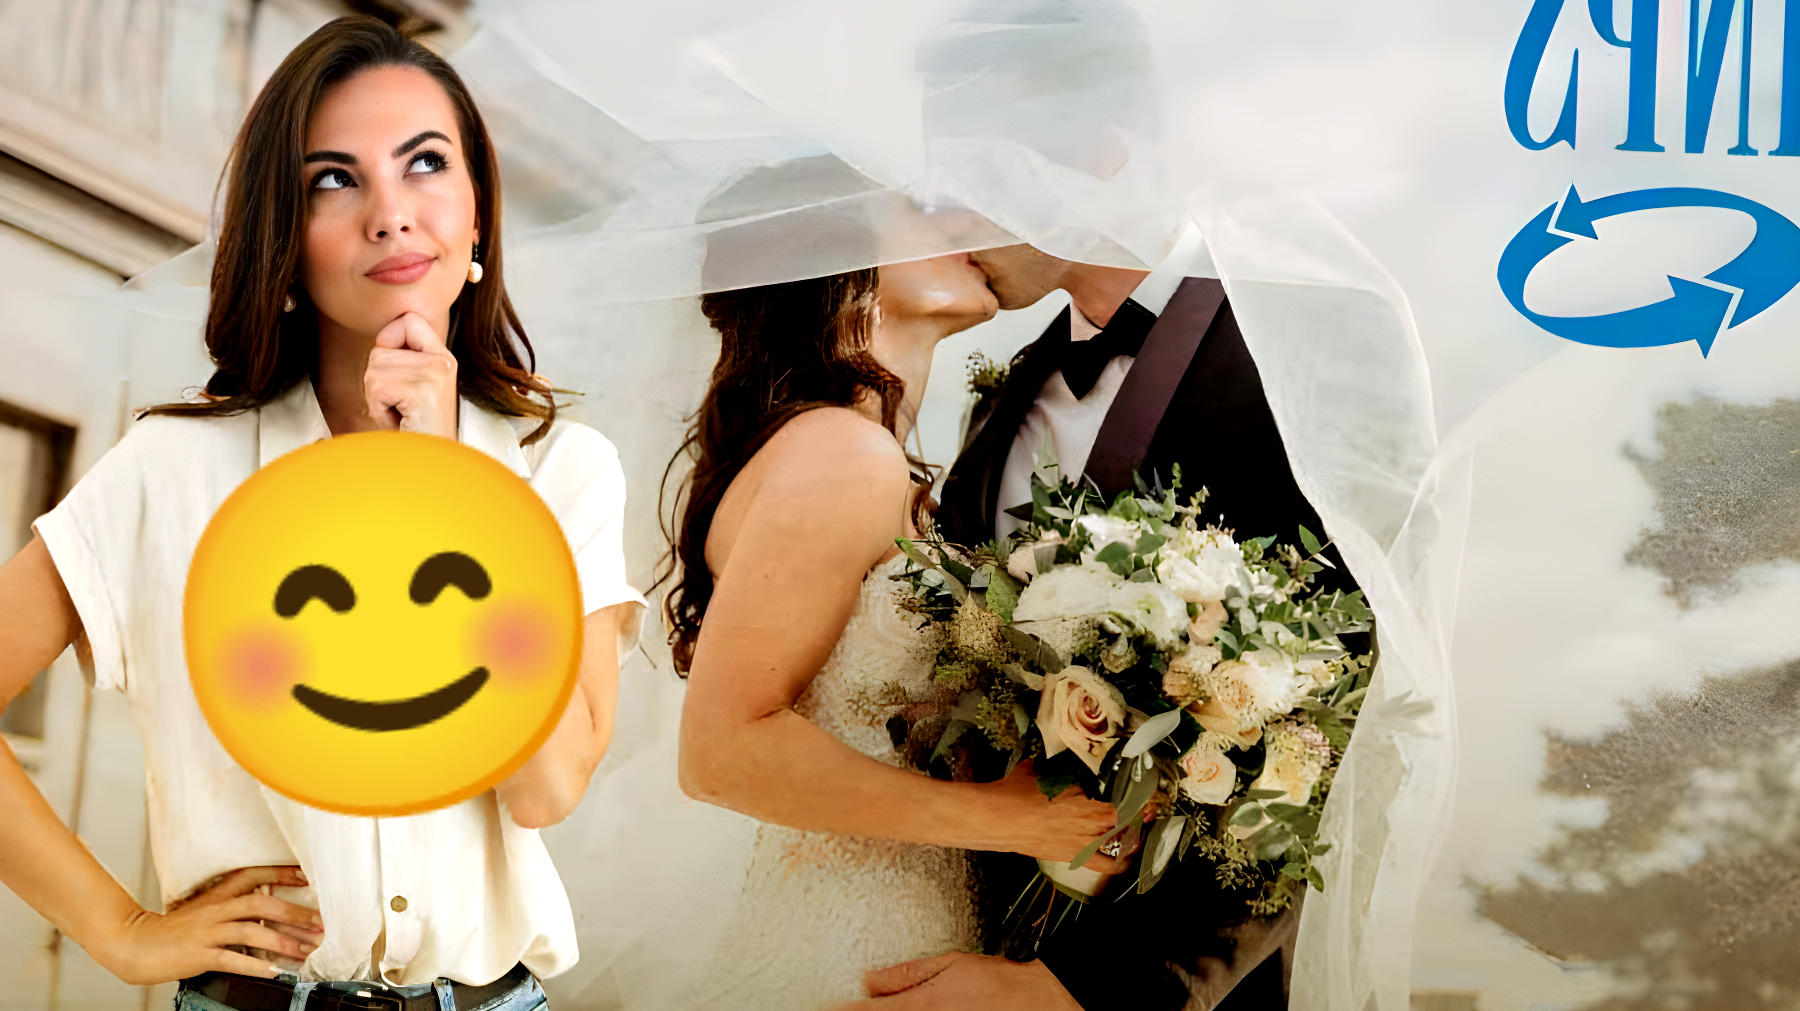 Scopri il segreto del congedo matrimoniale Inps: cosa ti spetta e come ottenerlo!